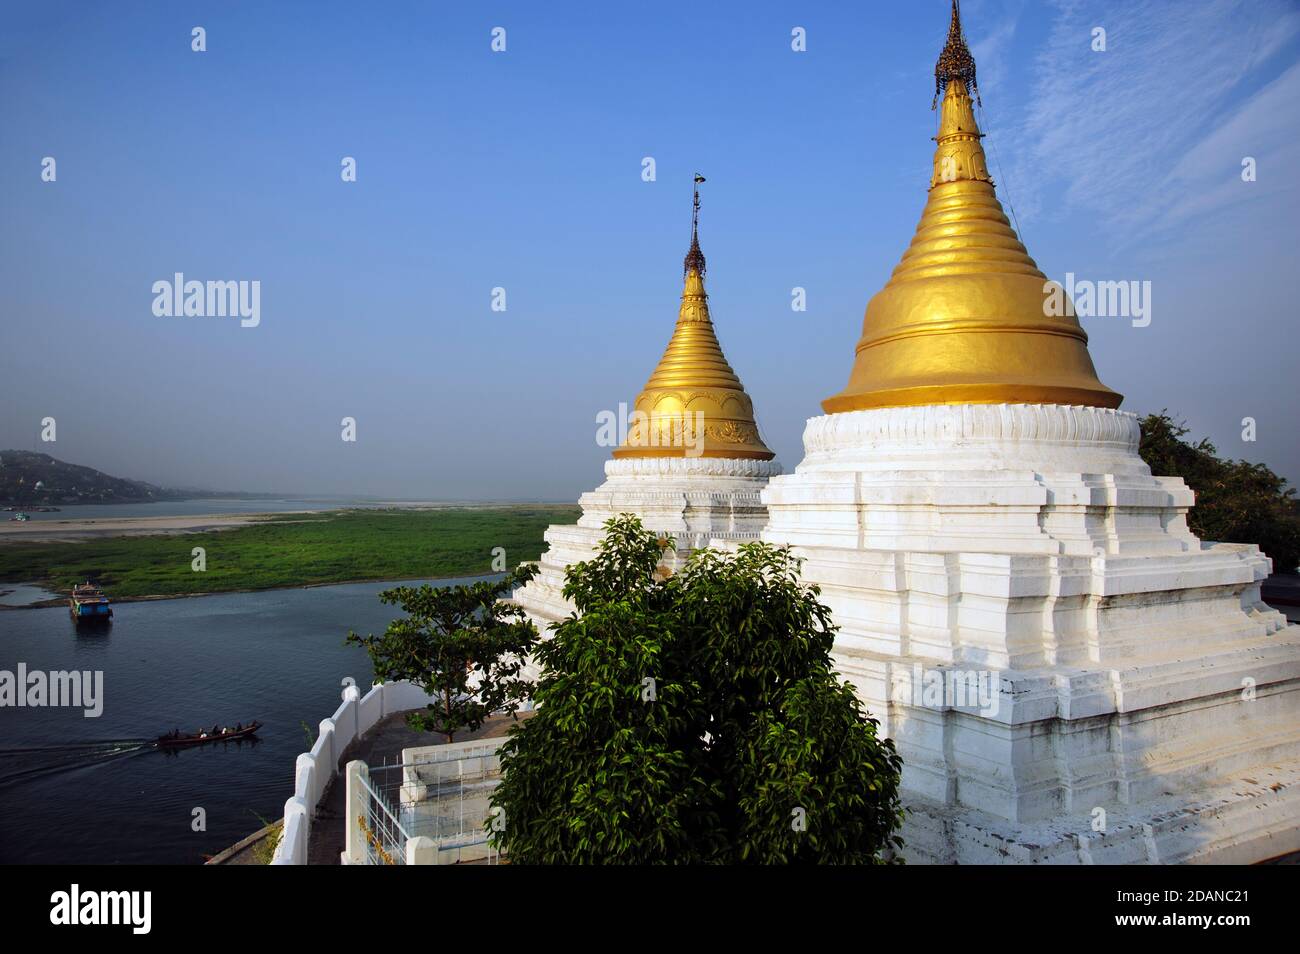 Un barco birmano pasa dos estupas de oro rematadas en el templo birmano En las orillas del río Ayeyarwady mirando hacia el otro lado Sagaing cerca de Mandalay Myanmar Foto de stock